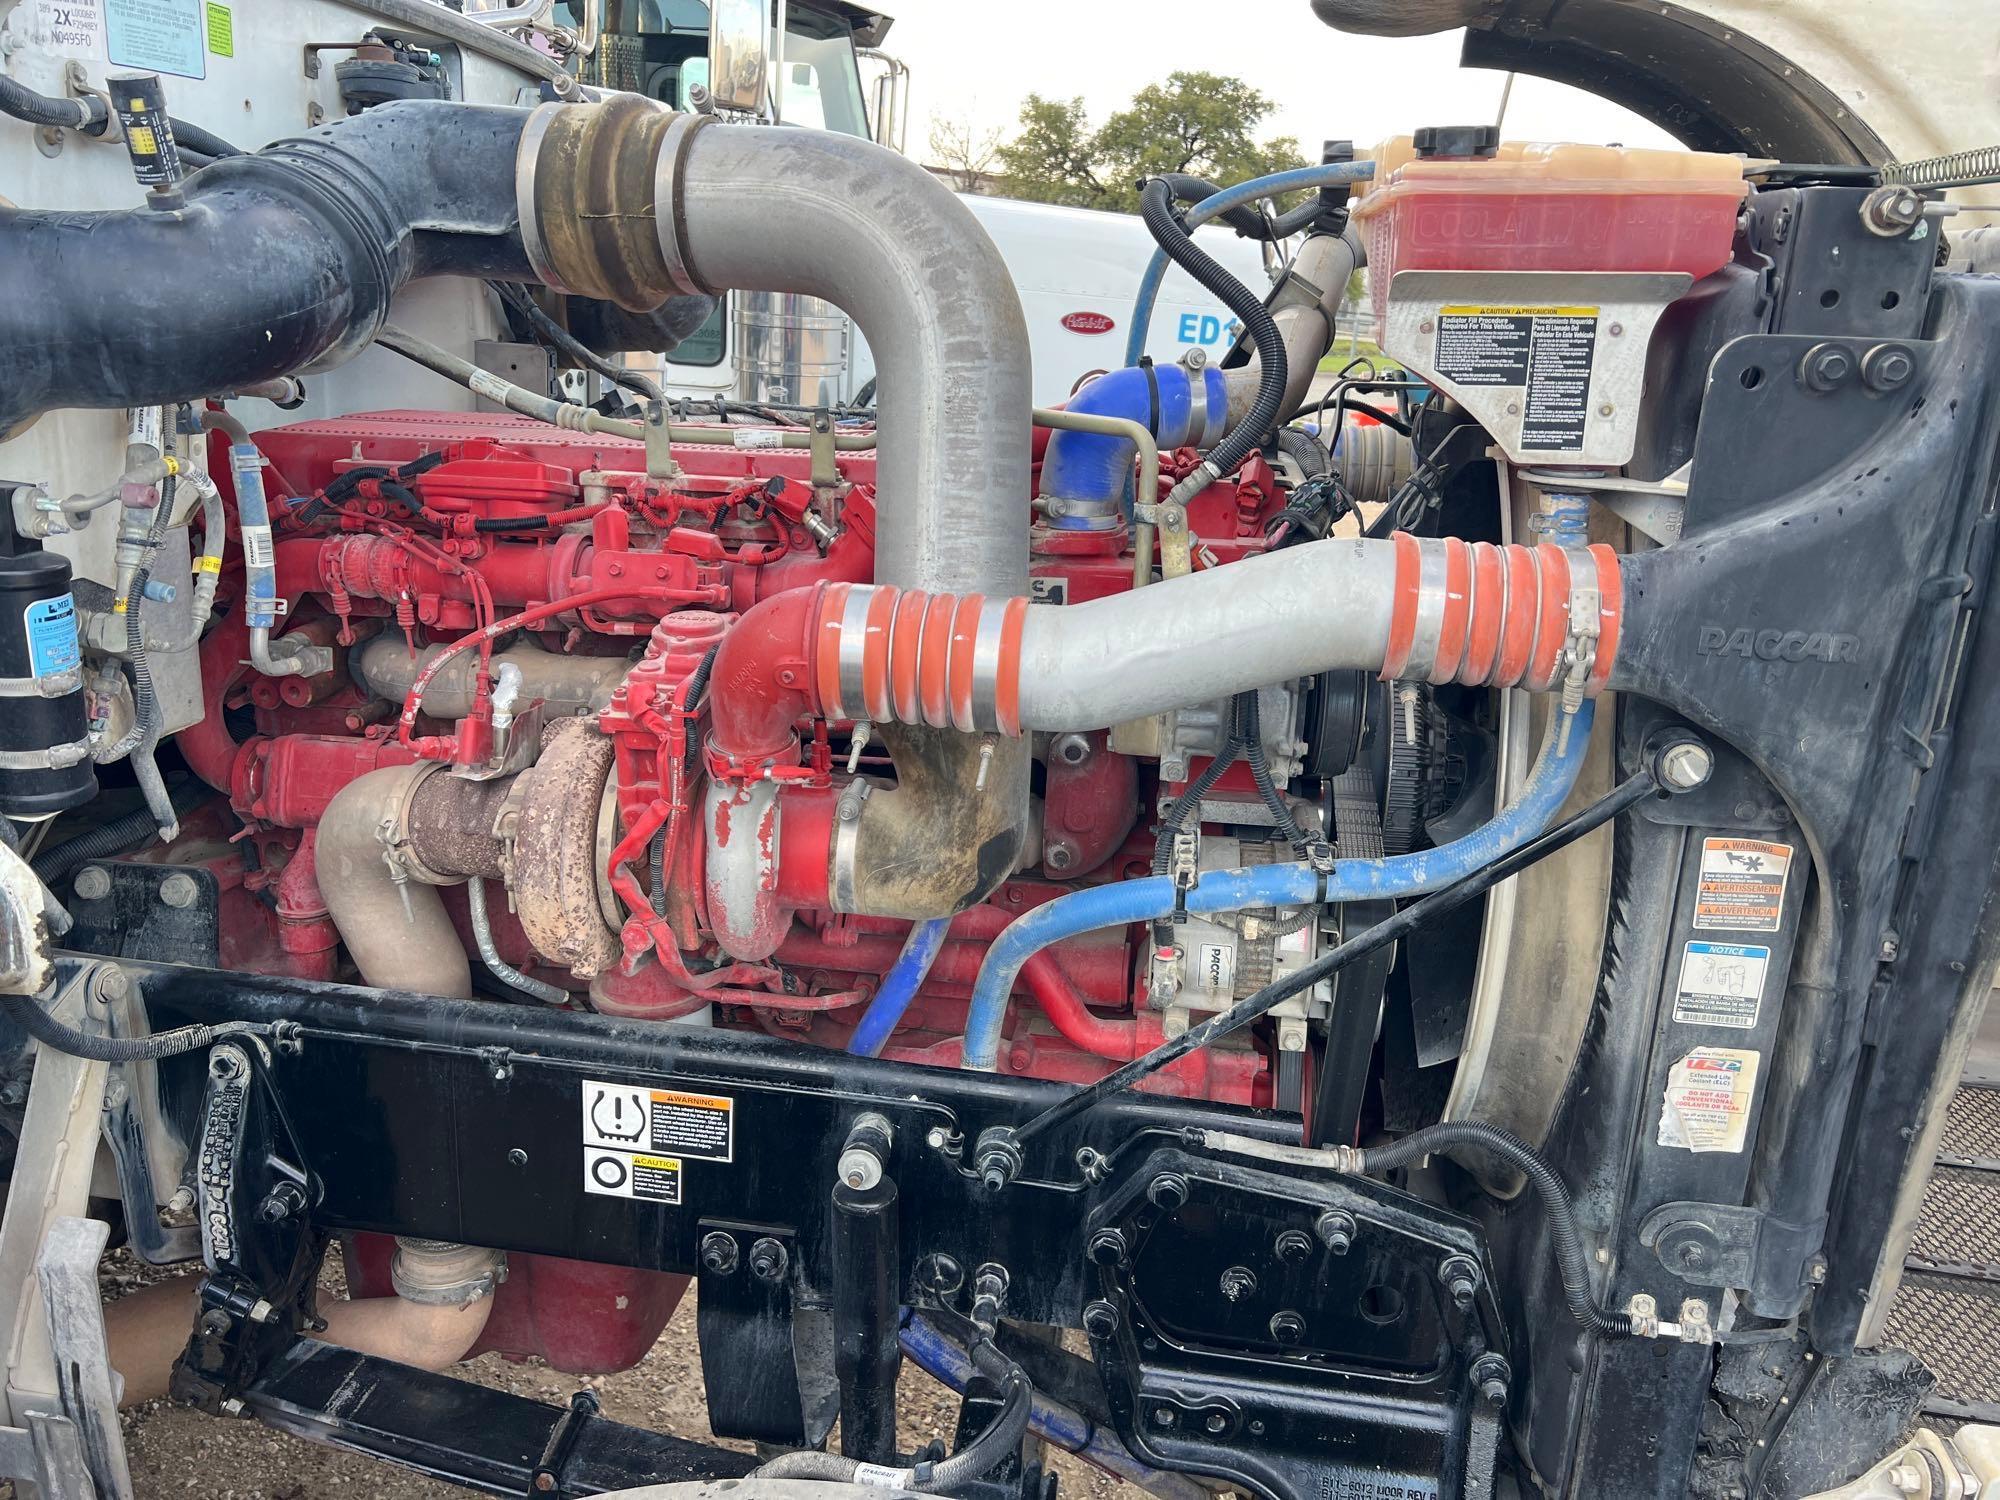 2017 PETERBILT 389 TRUCK TRACTOR VN:1XPXD49X1HD362237...powered by Cummins ISX15 diesel engine,